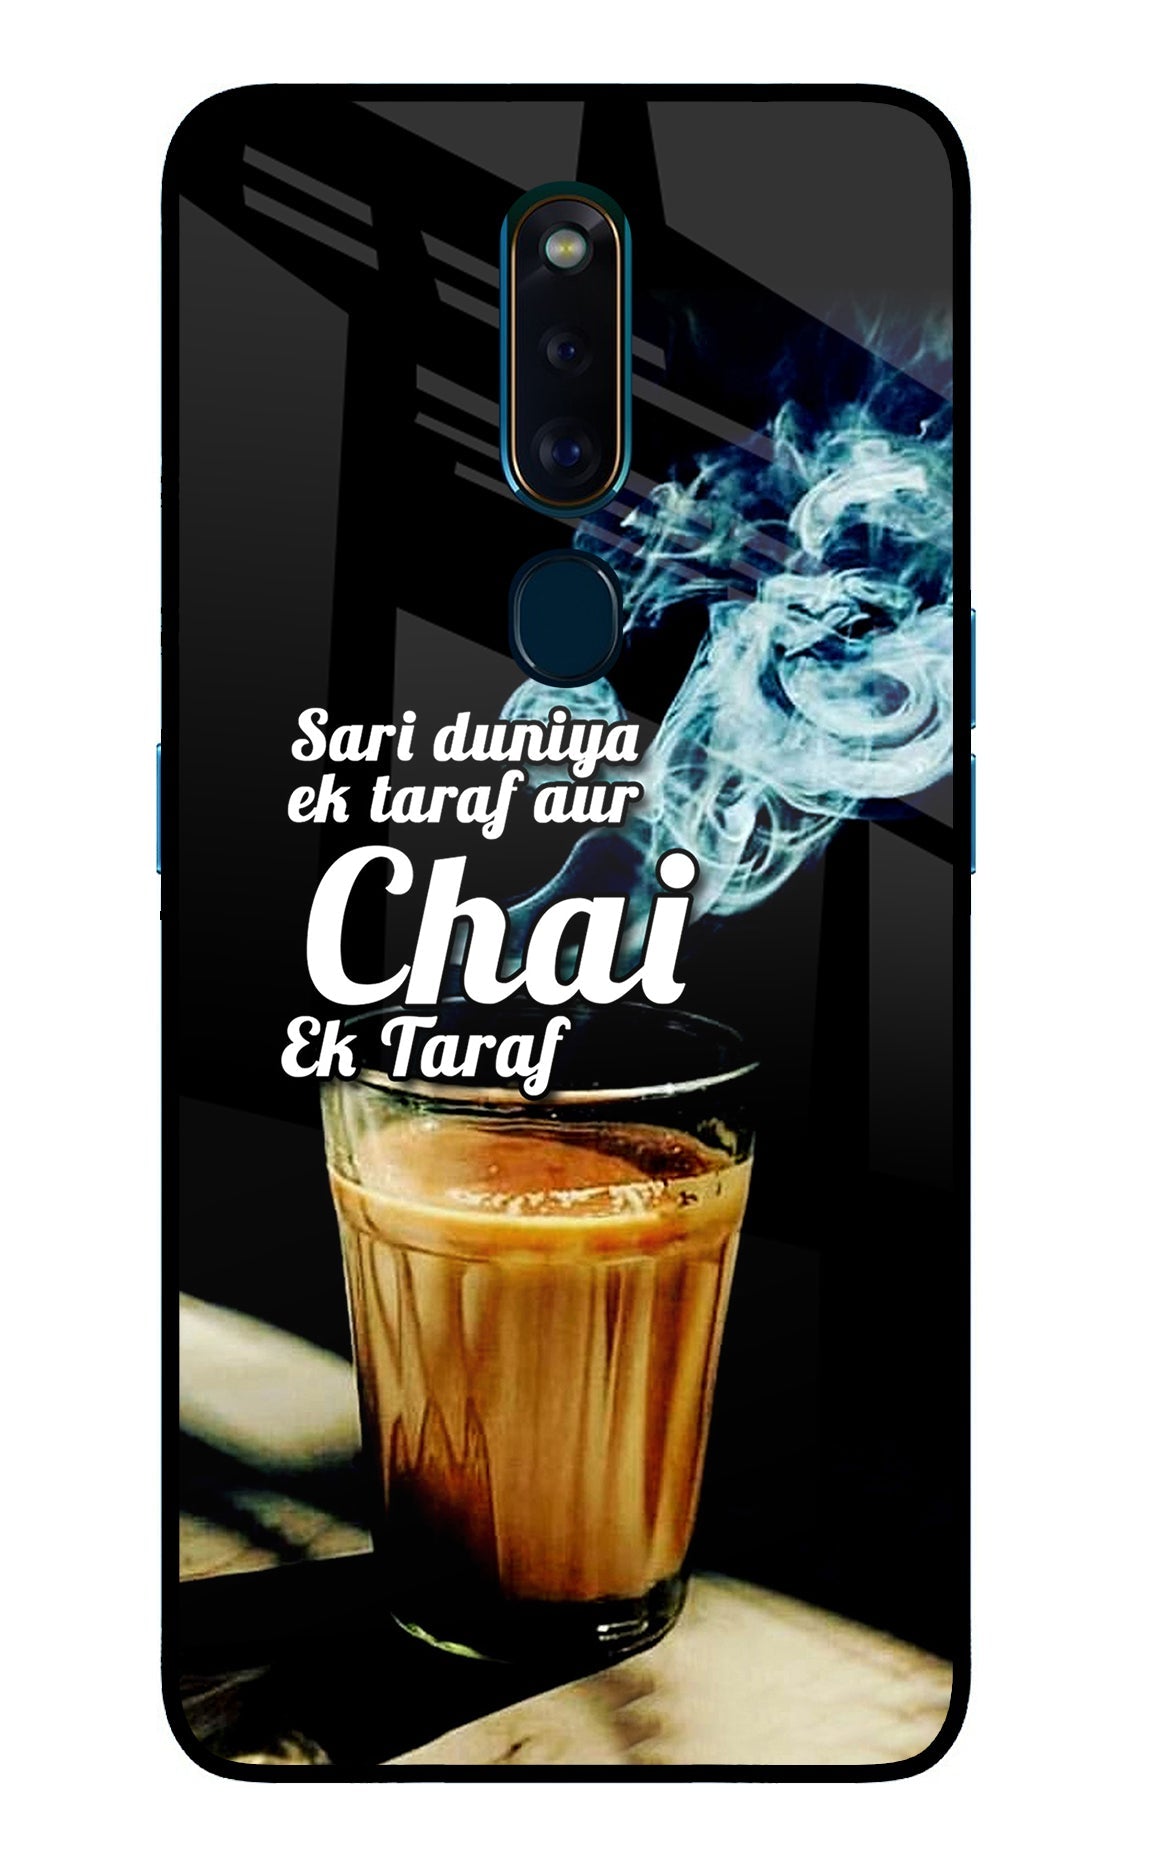 Chai Ek Taraf Quote Oppo F11 Pro Glass Case